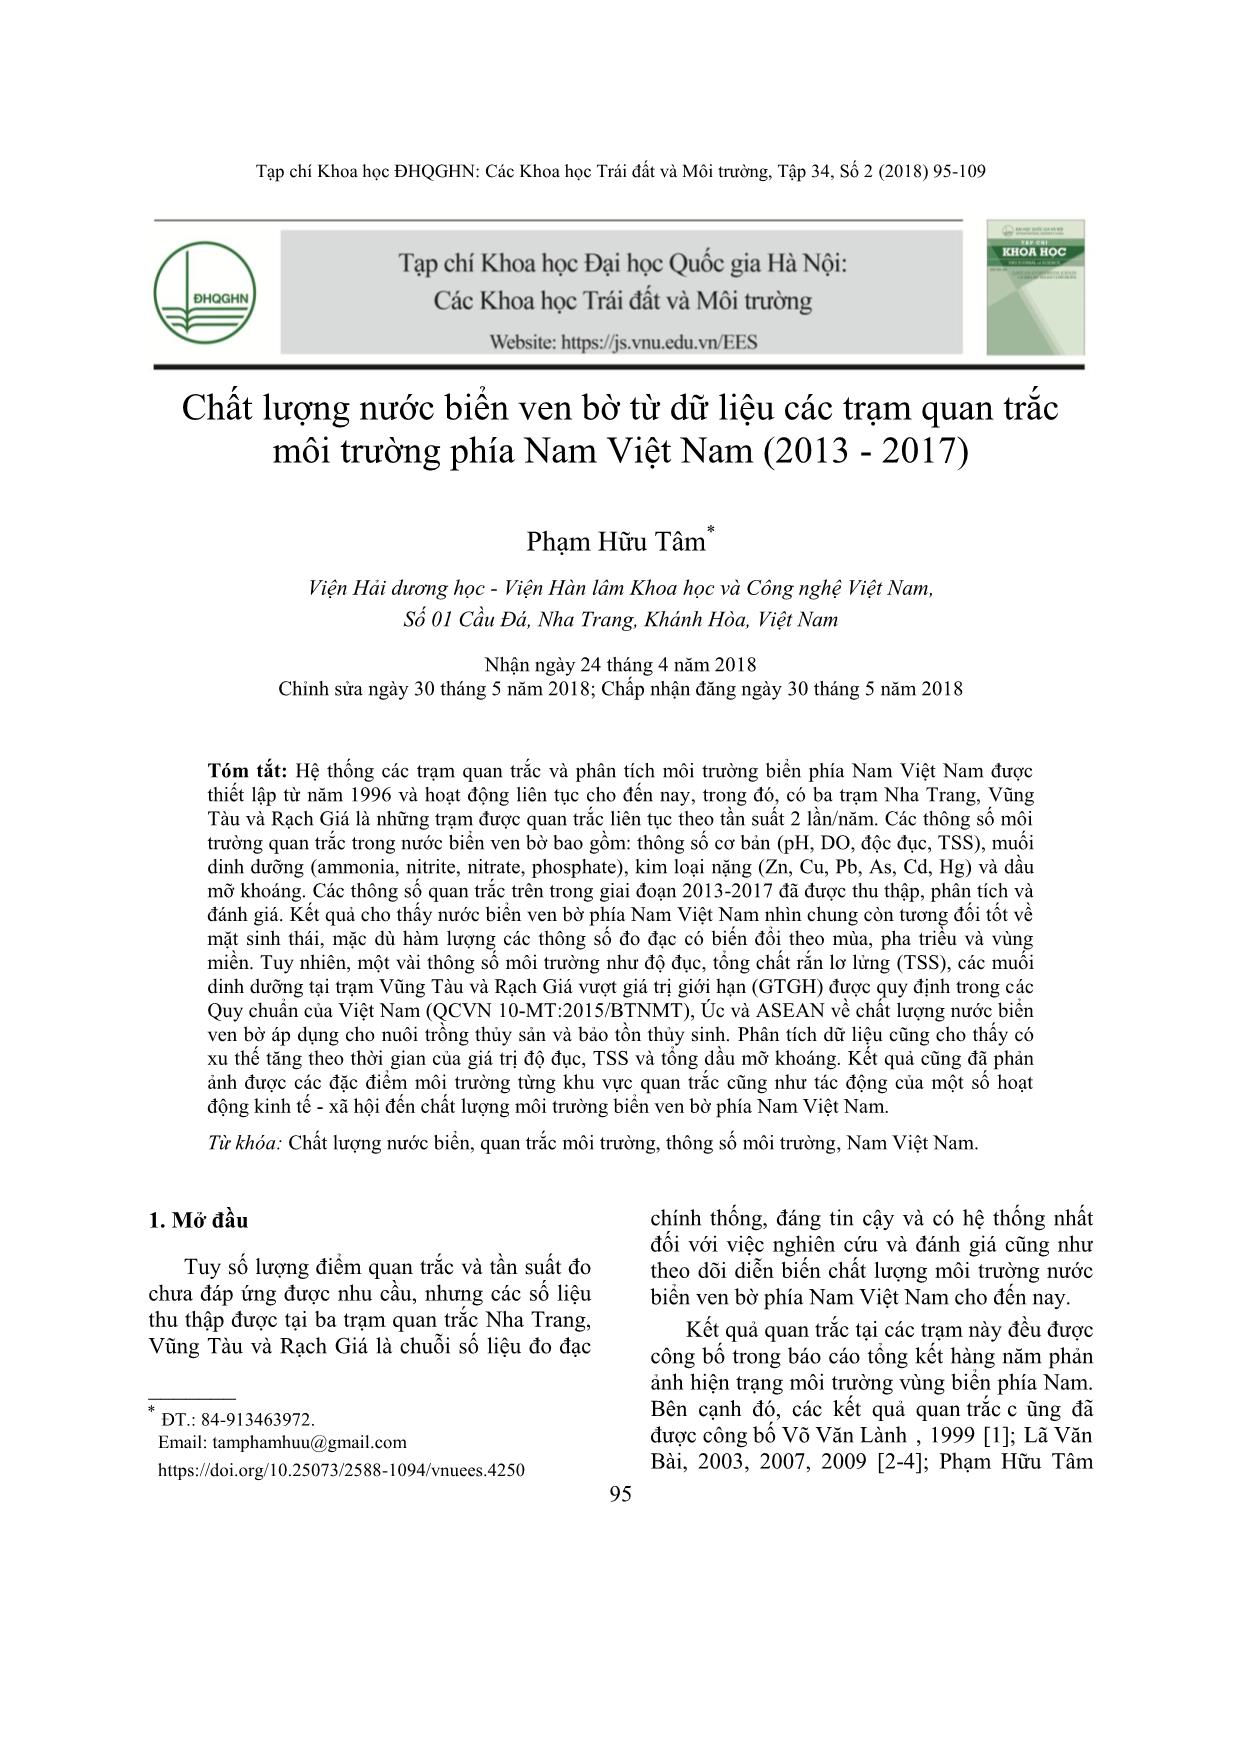 Chất lượng nước biển ven bờ từ dữ liệu các trạm quan trắc môi trường phía Nam Việt Nam (2013-2017) trang 1